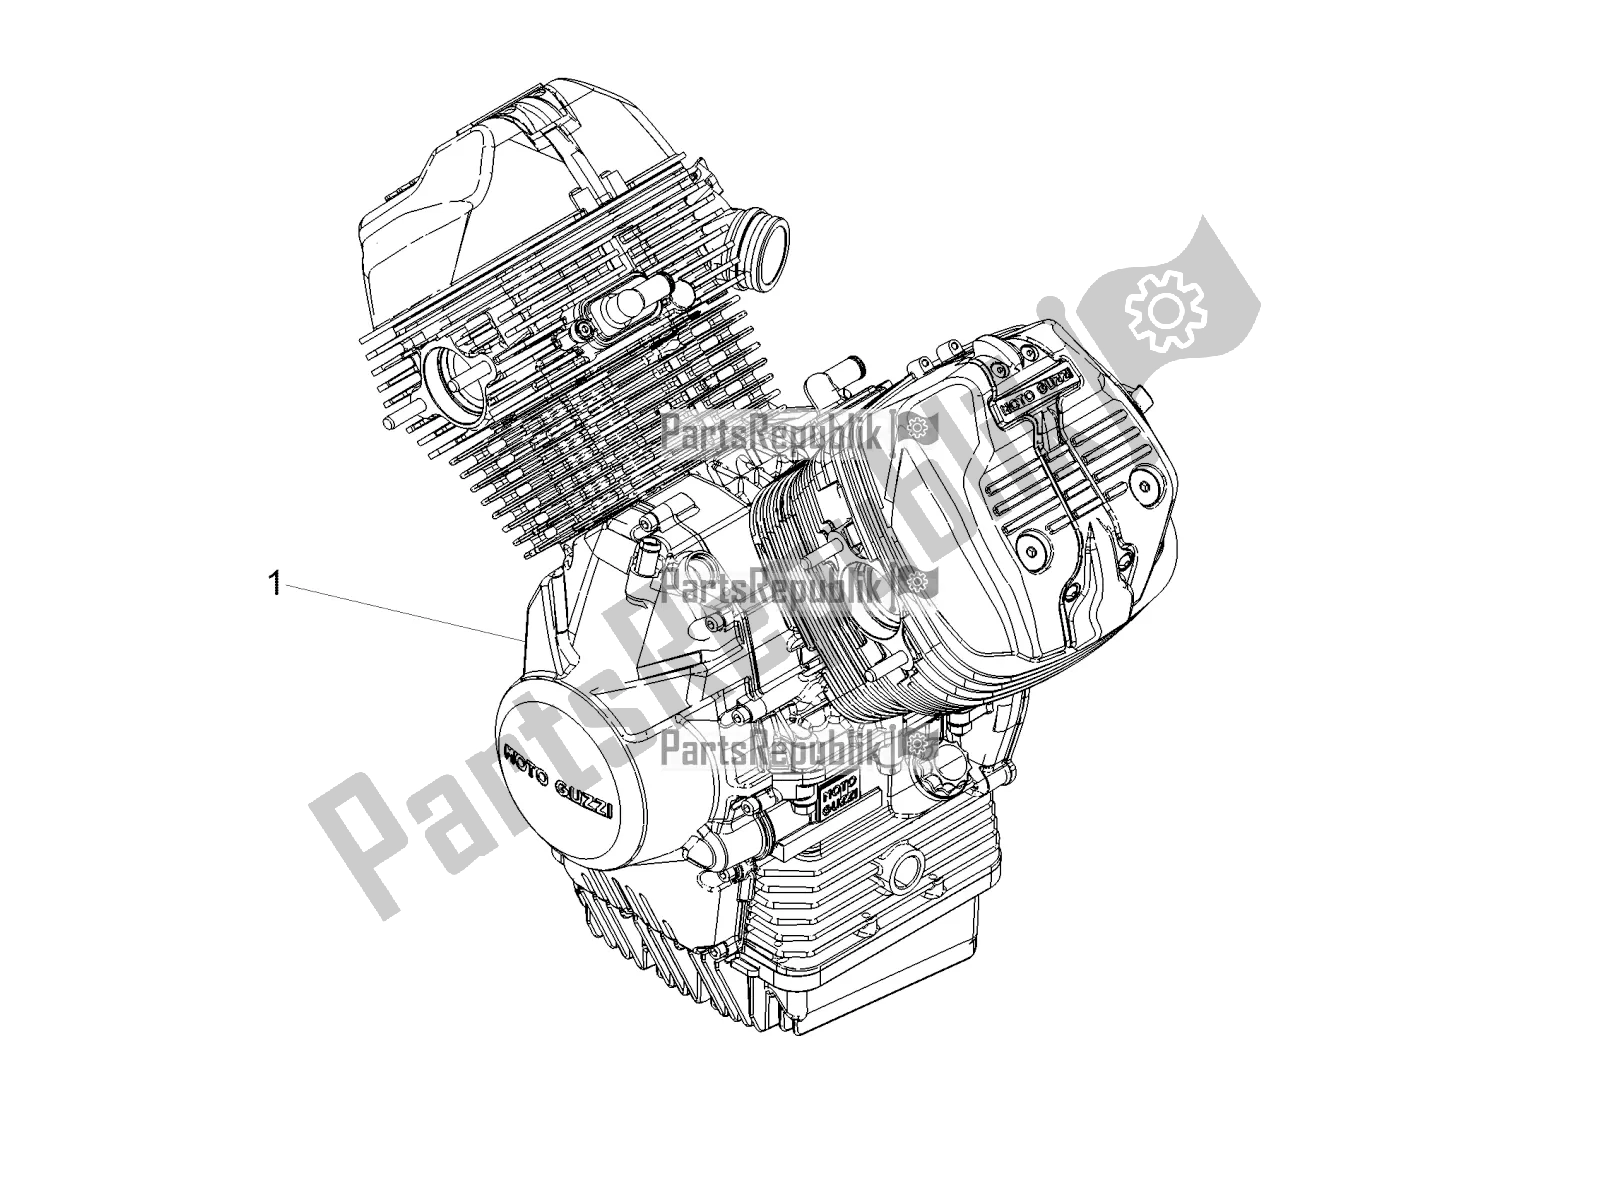 Toutes les pièces pour le Levier Partiel Pour Compléter Le Moteur du Moto-Guzzi V7 III Carbon Shine 750 2018